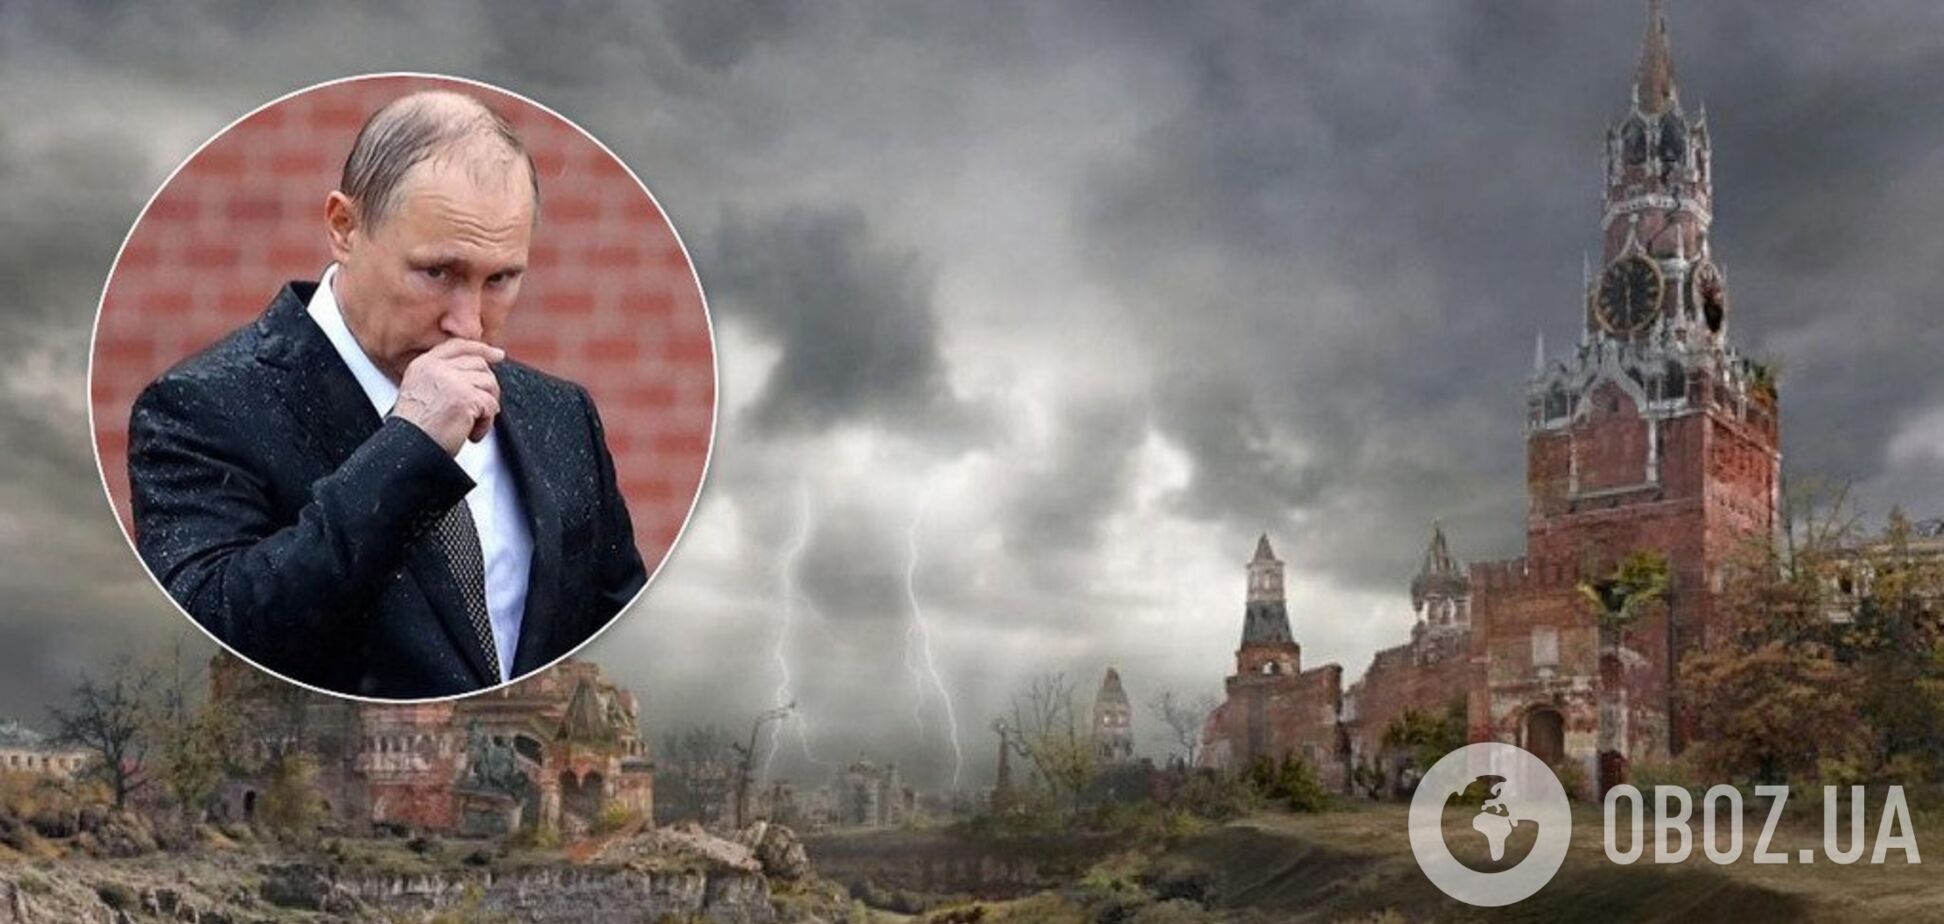 'Путин – скрепа и раковая опухоль': журналист спрогнозировал распад России